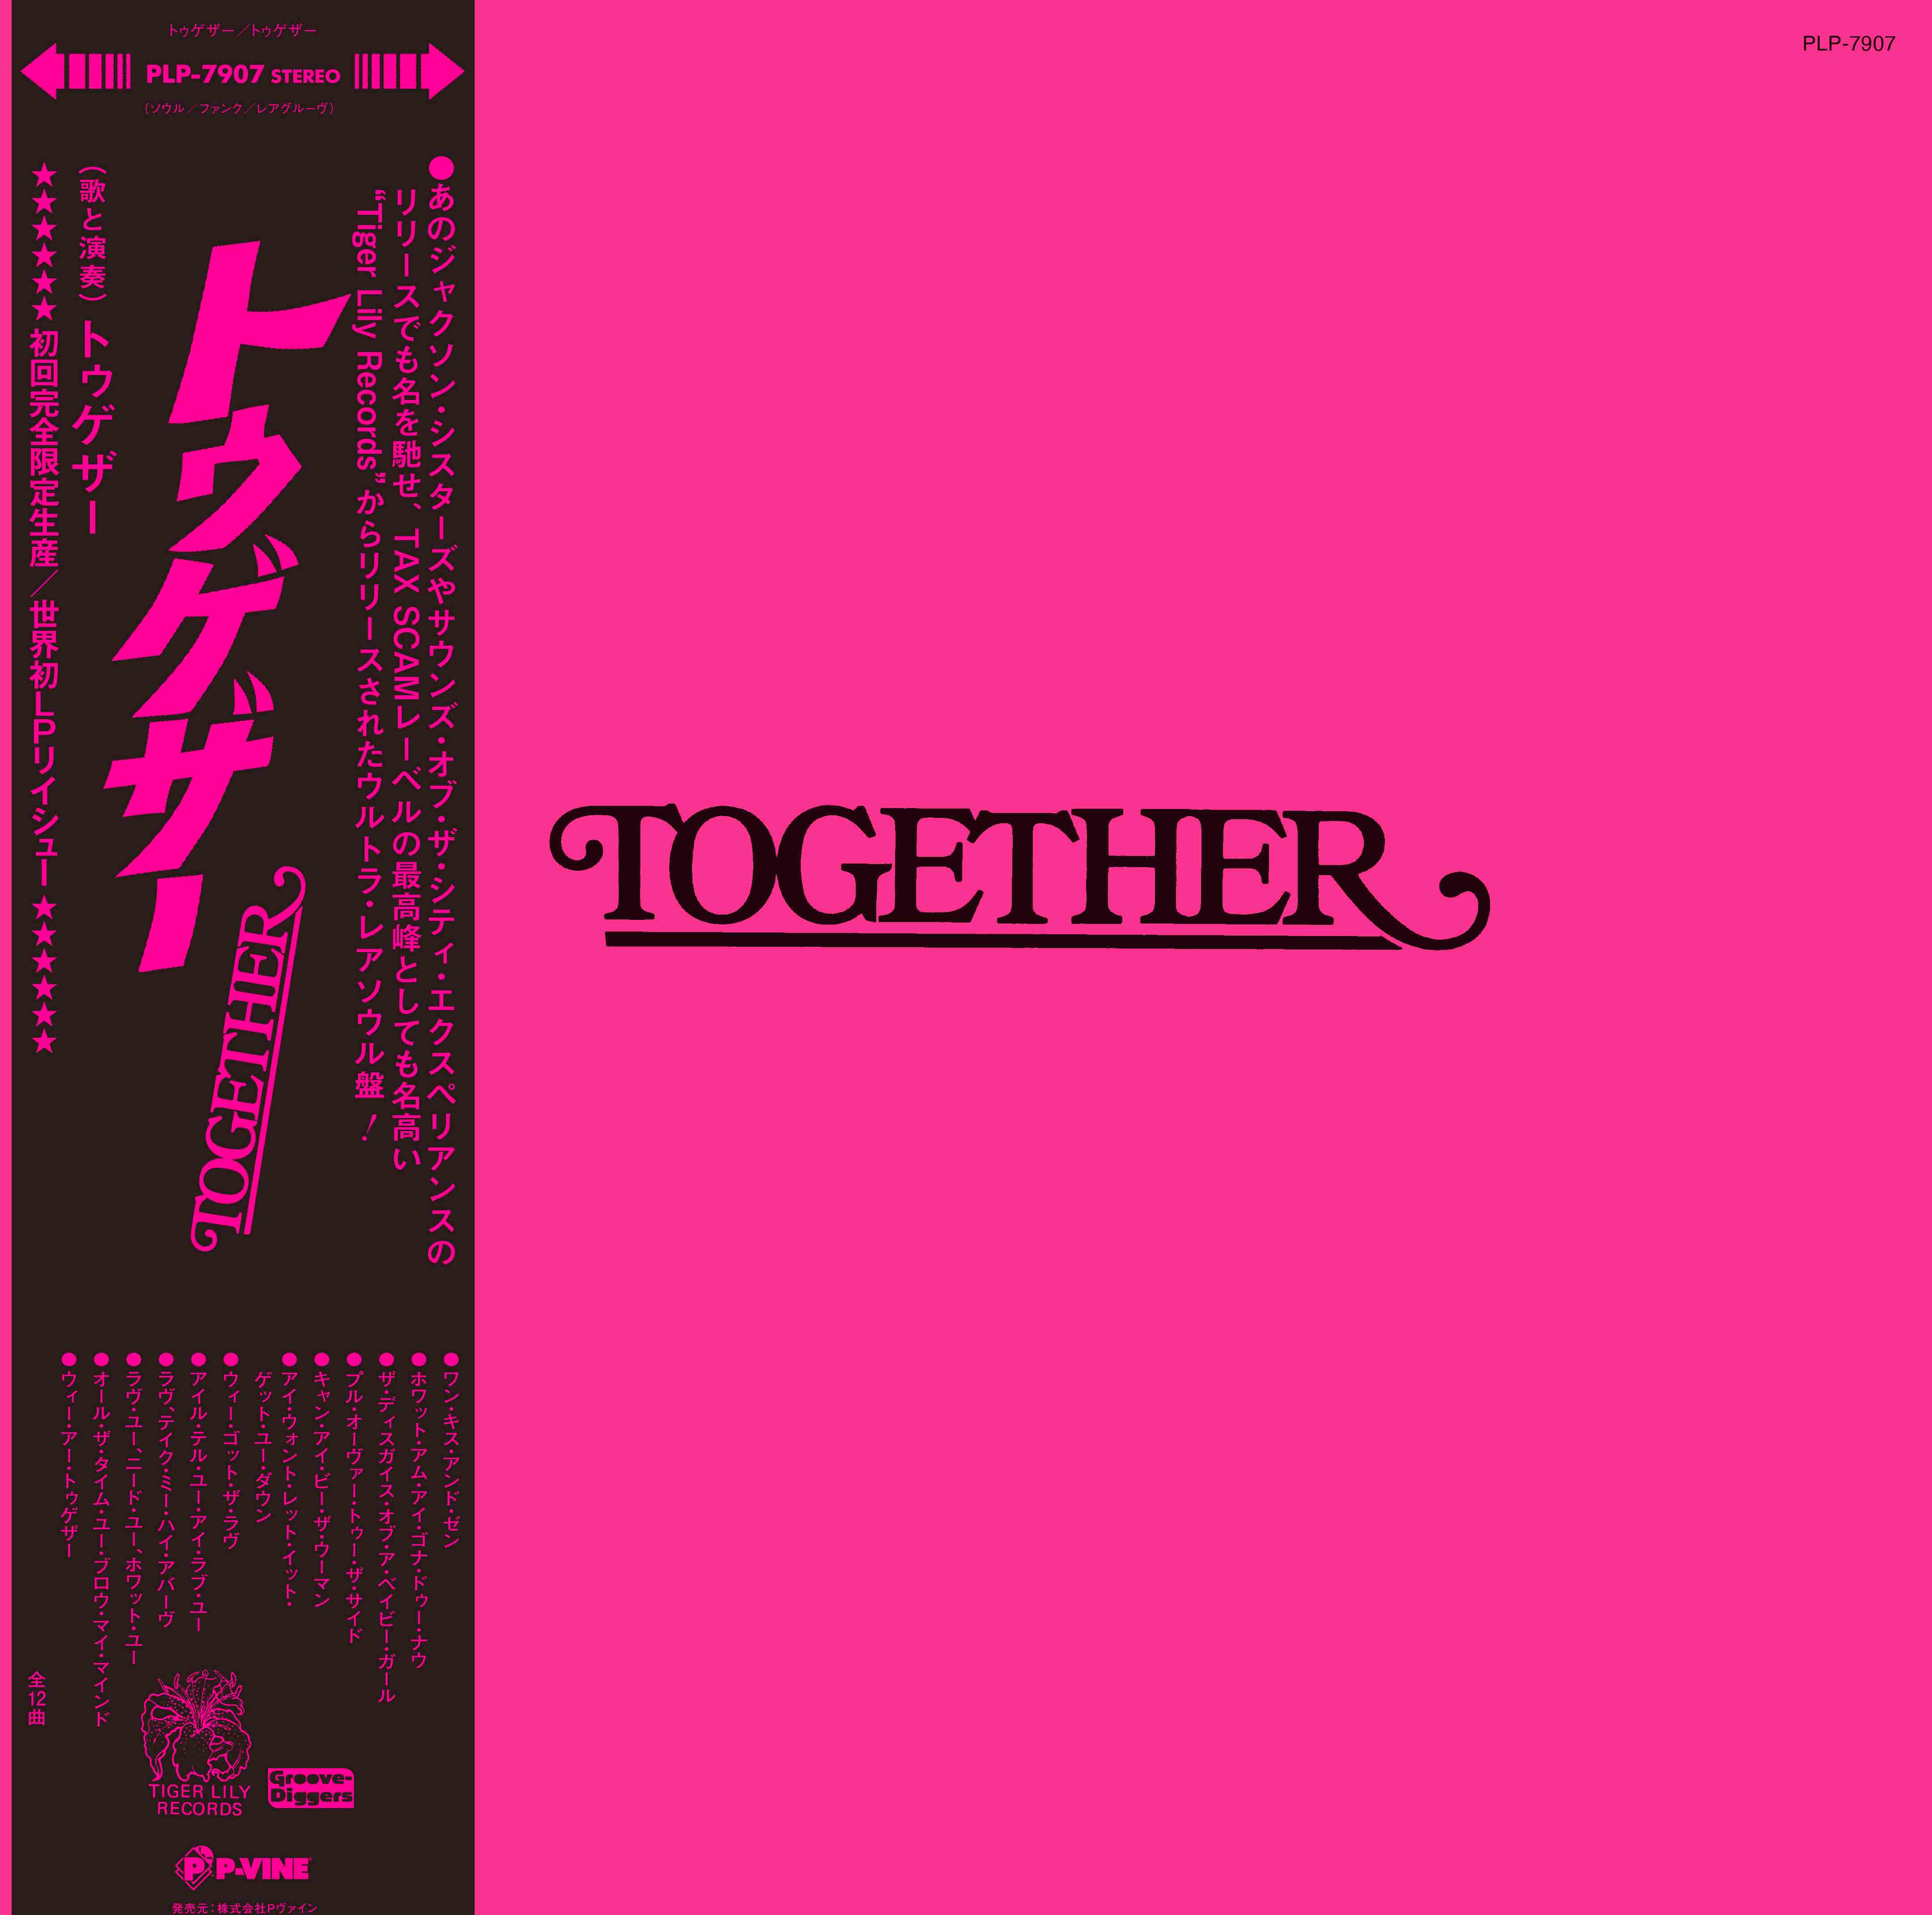 TOGETHER「Together」